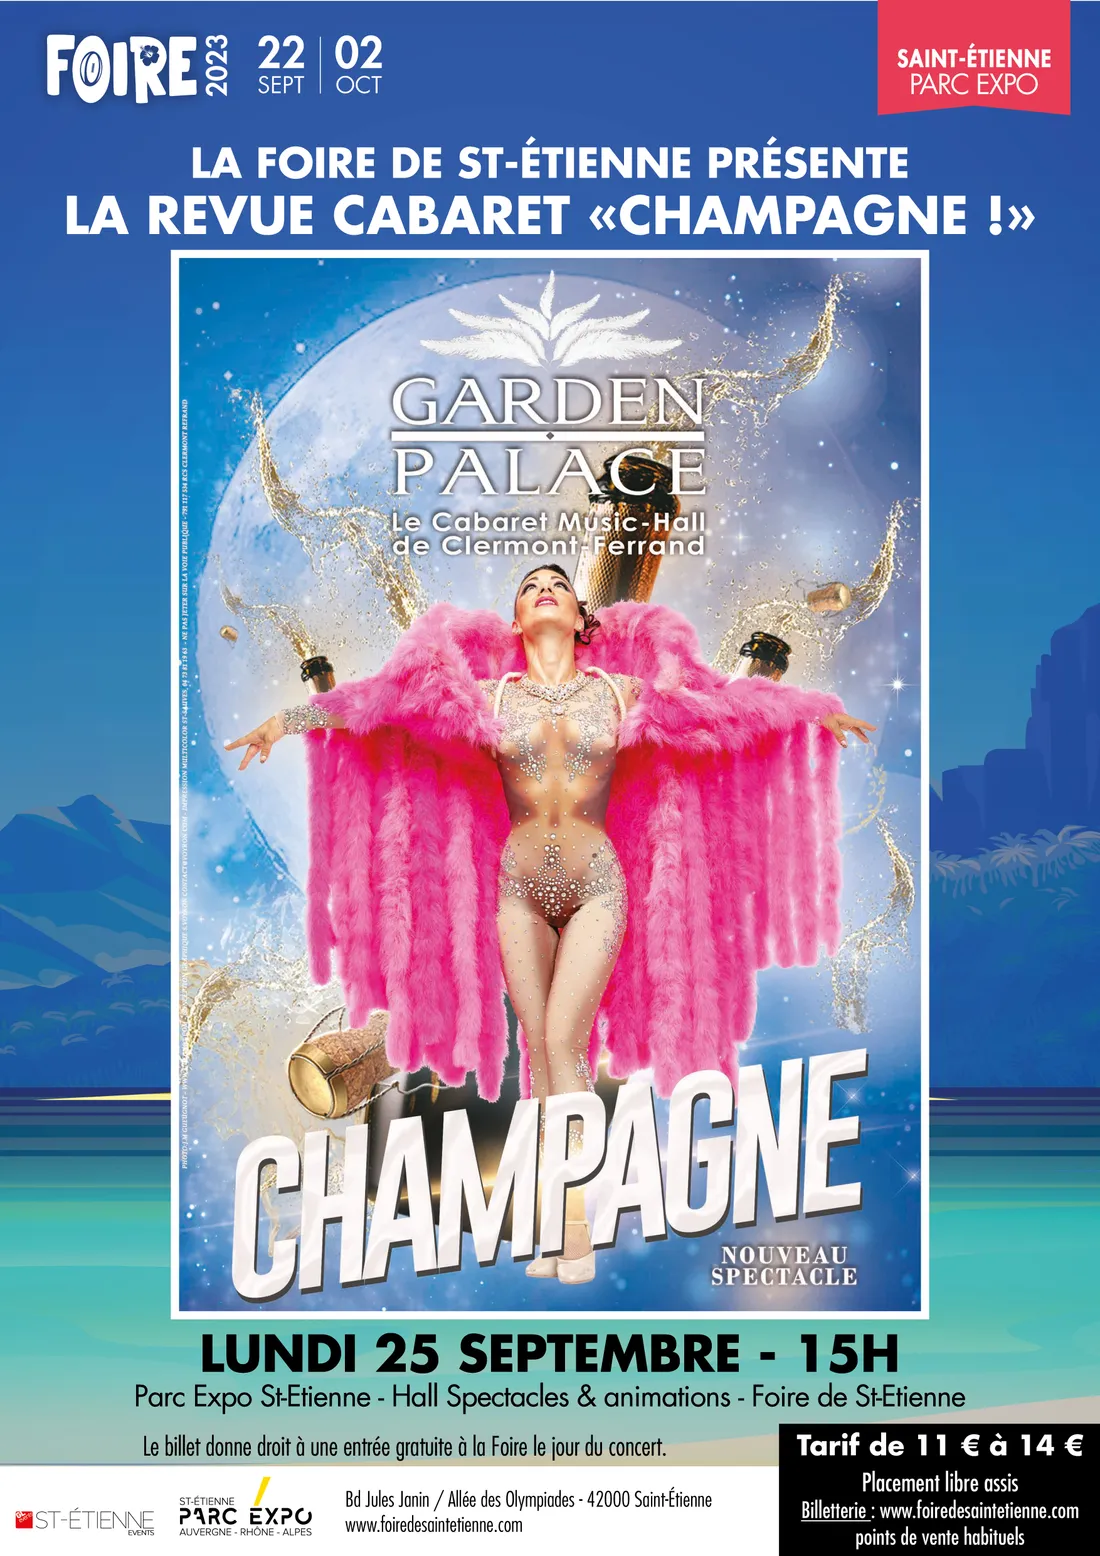 Foire de St-Etienne - Soirée cabaret "Champagne" à réserver dès maintenant !